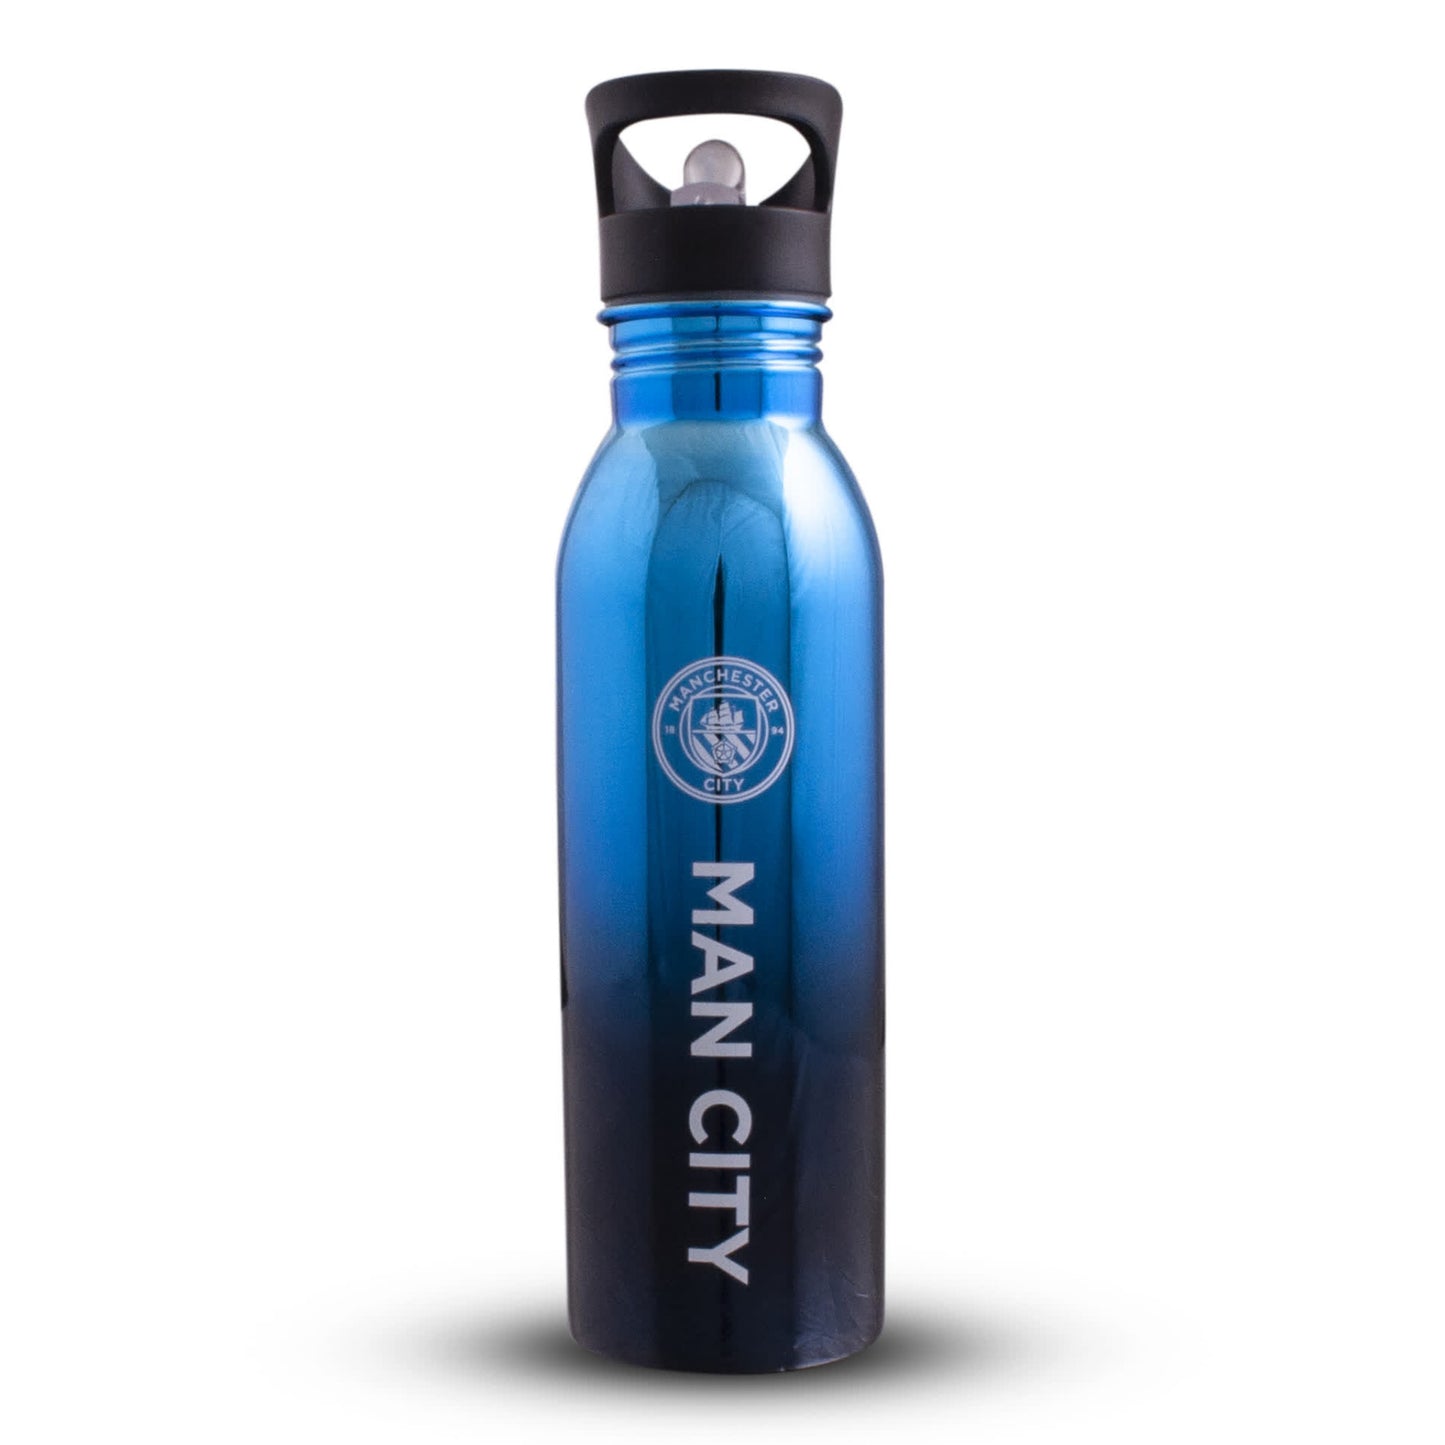 Manchester City 700ml Stainless Steel UV Water Bottle